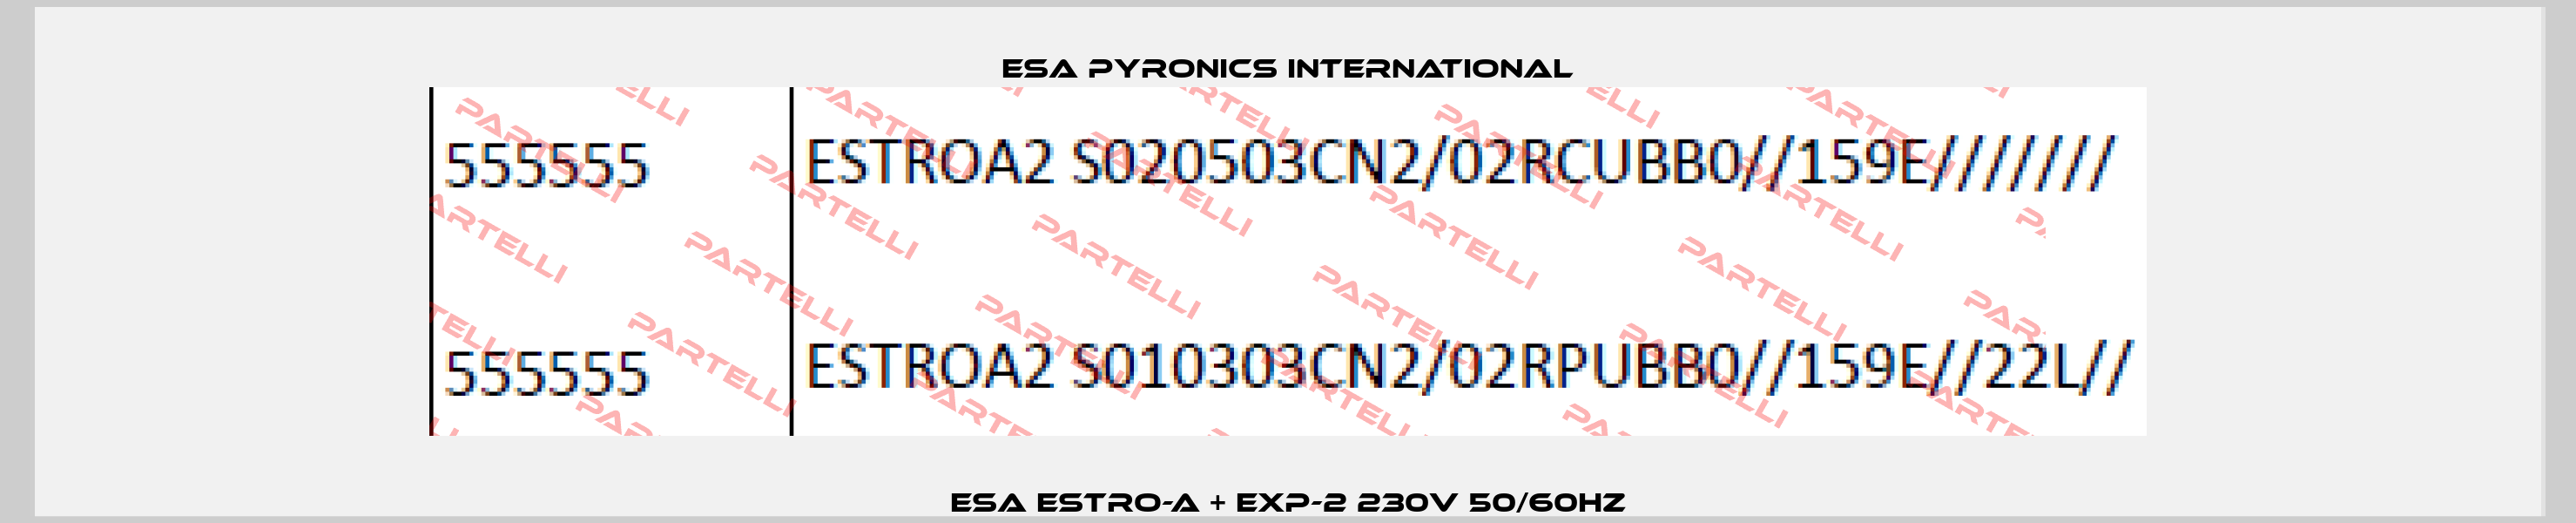 ESA ESTRO-A + EXP-2 230V 50/60Hz ESA Pyronics International